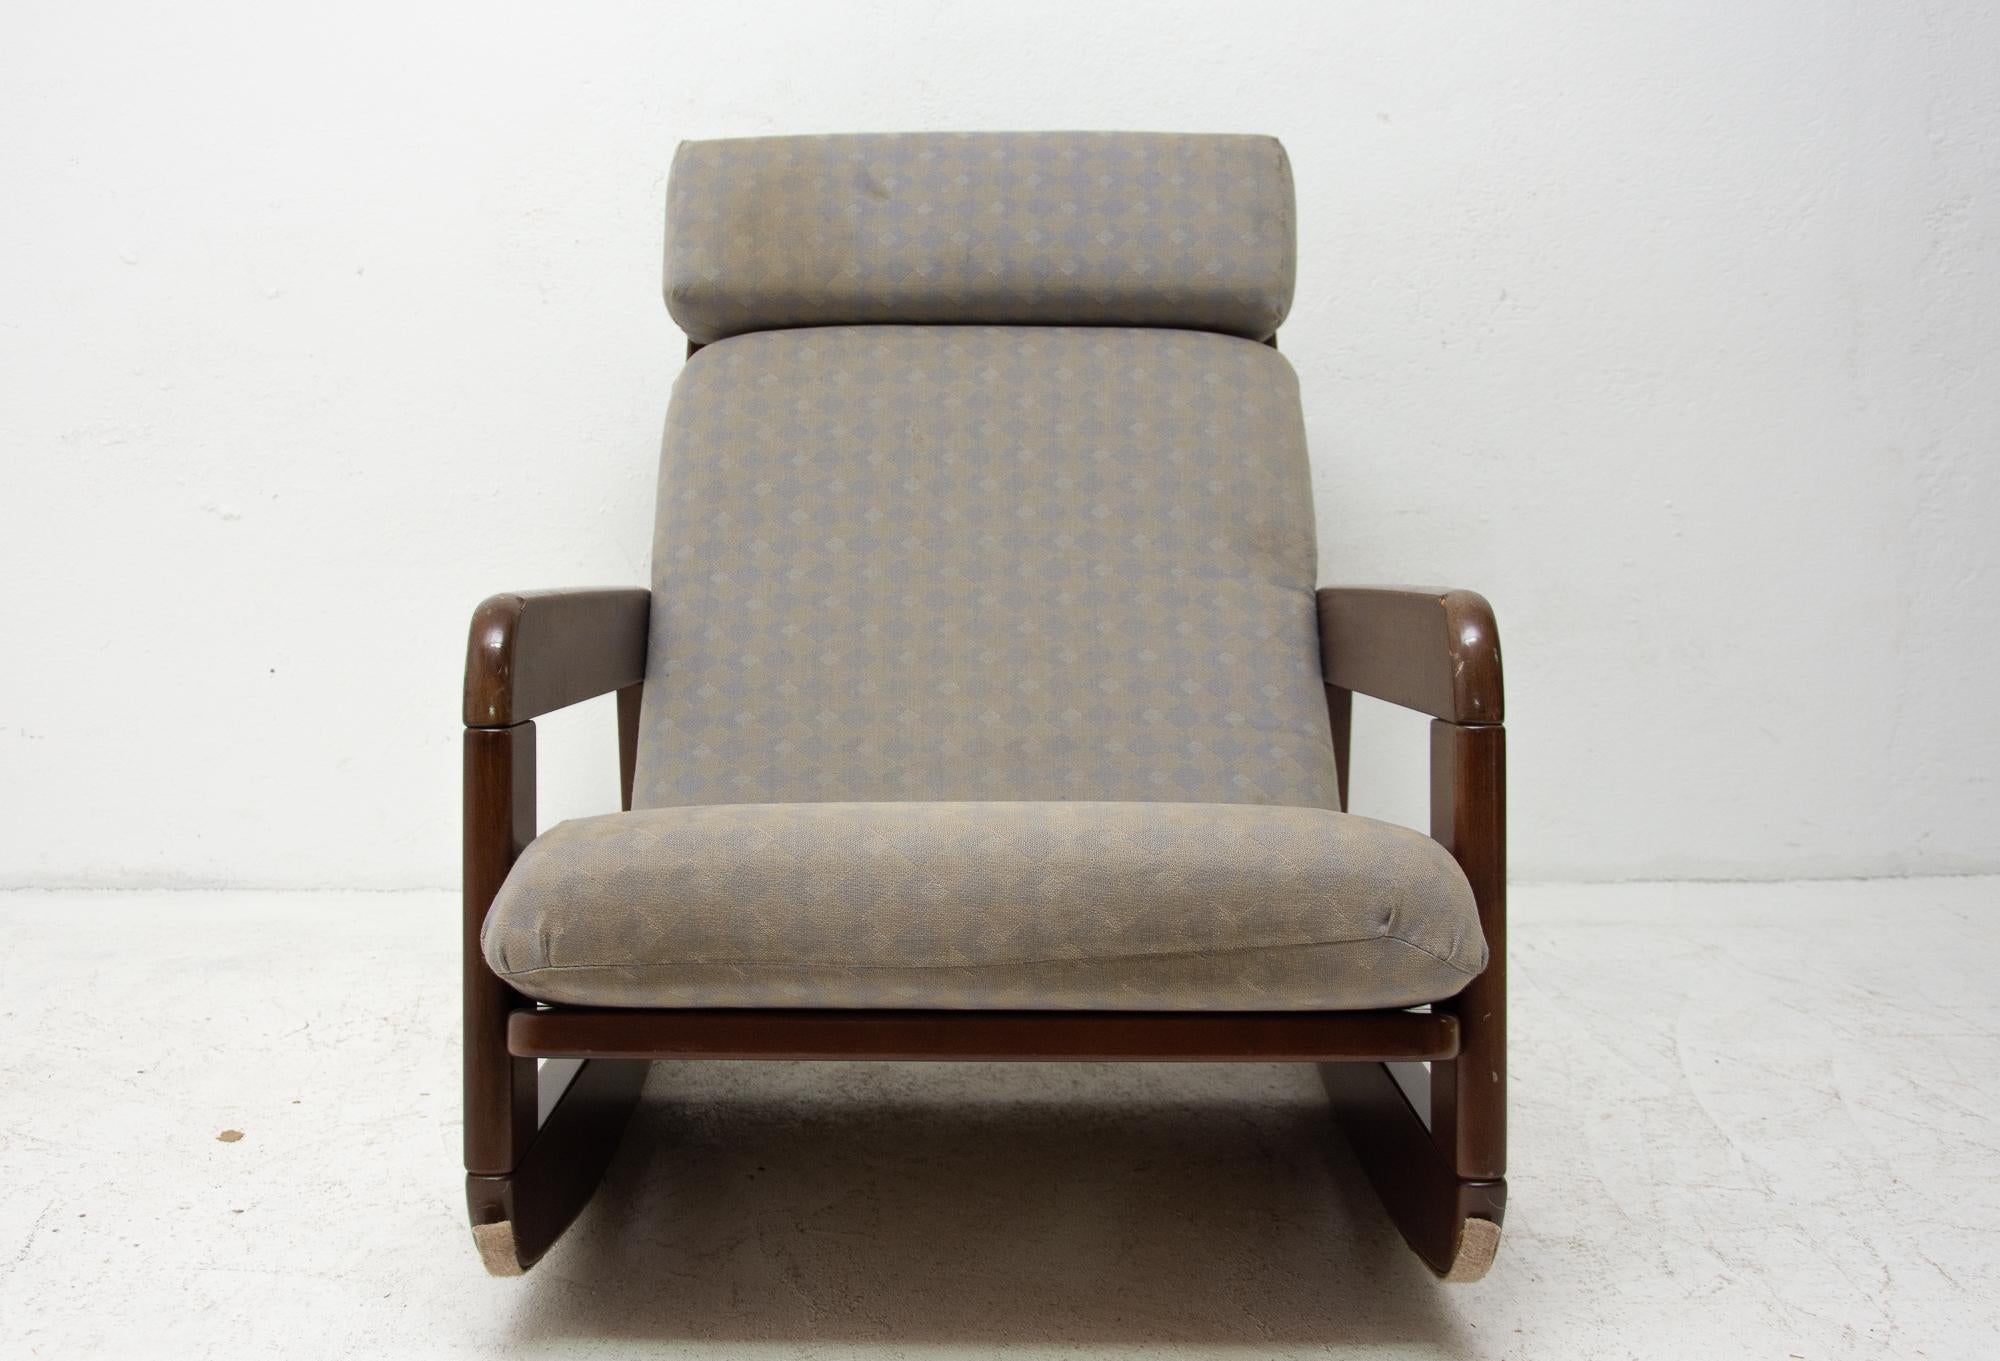 Dieser gepolsterte Bugholz-Schaukelstuhl wurde in den 1960er Jahren in der ehemaligen Tschechoslowakei hergestellt. Der Rahmen ist wahrscheinlich aus gebeiztem Buchenholz gefertigt und weist leichte Gebrauchsspuren auf.
Die Polsterung ist original,